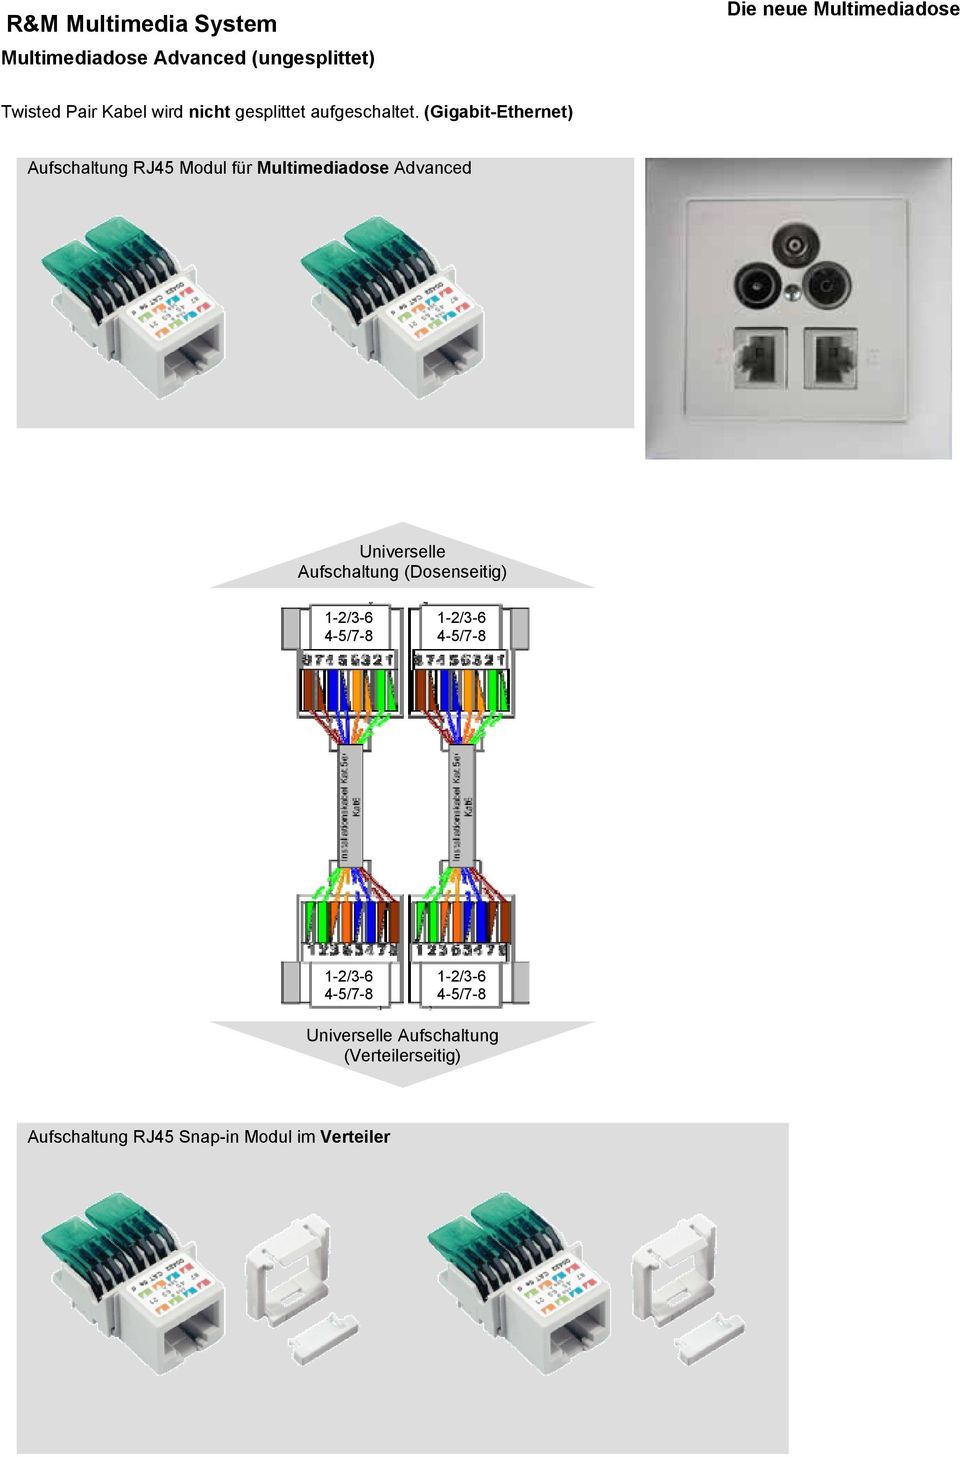 (Gigabit-Ethernet) Aufschaltung RJ45 Modul für Multimediadose Advanced Universelle